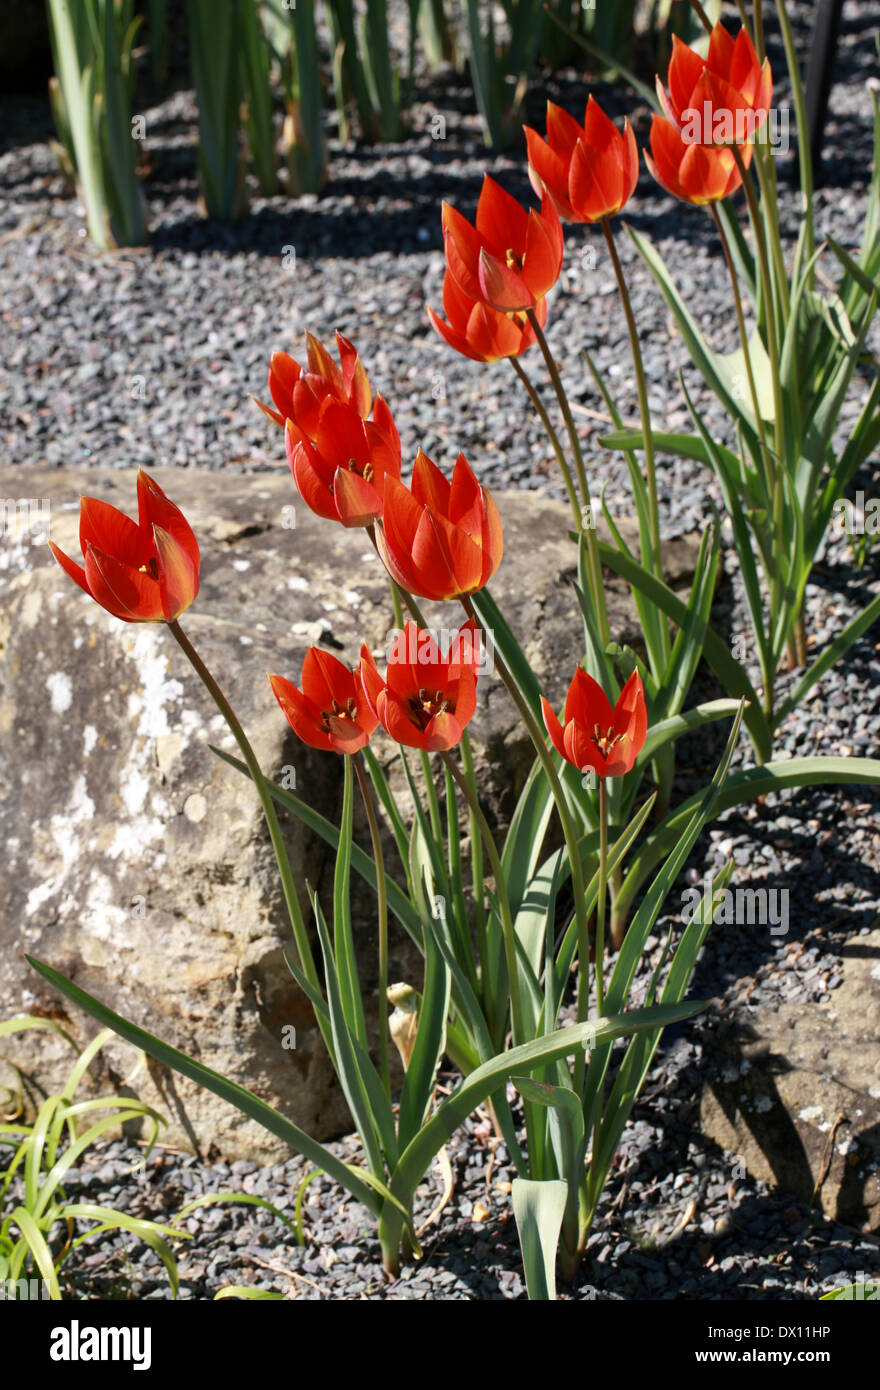 Tulip, Tulipa whittallii especies, Liliaceae. Turquía. Foto de stock